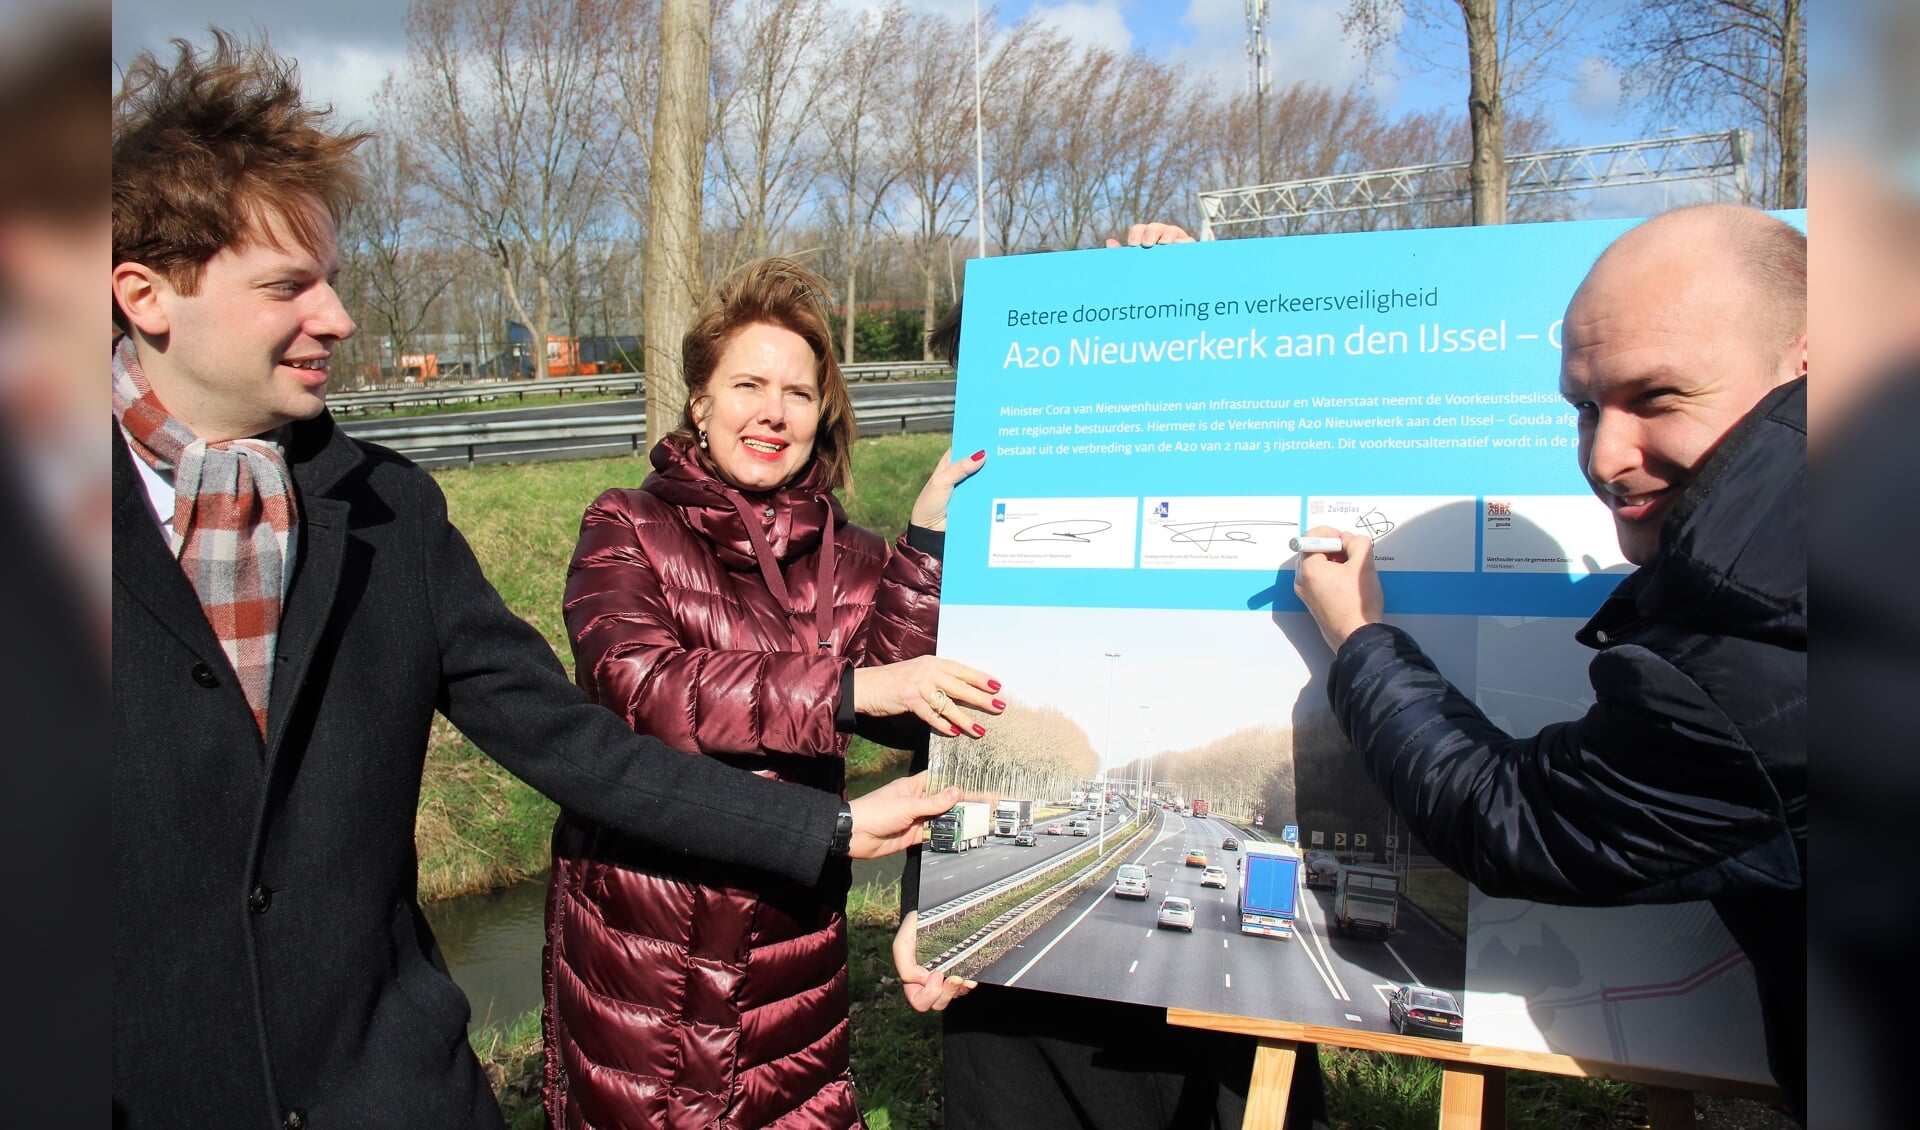 Gedeputeerde Vermeulen en minister Nieuwenhuizen gingen wethouder Schuurman voor bij het tekenen van de overeenkomst. 